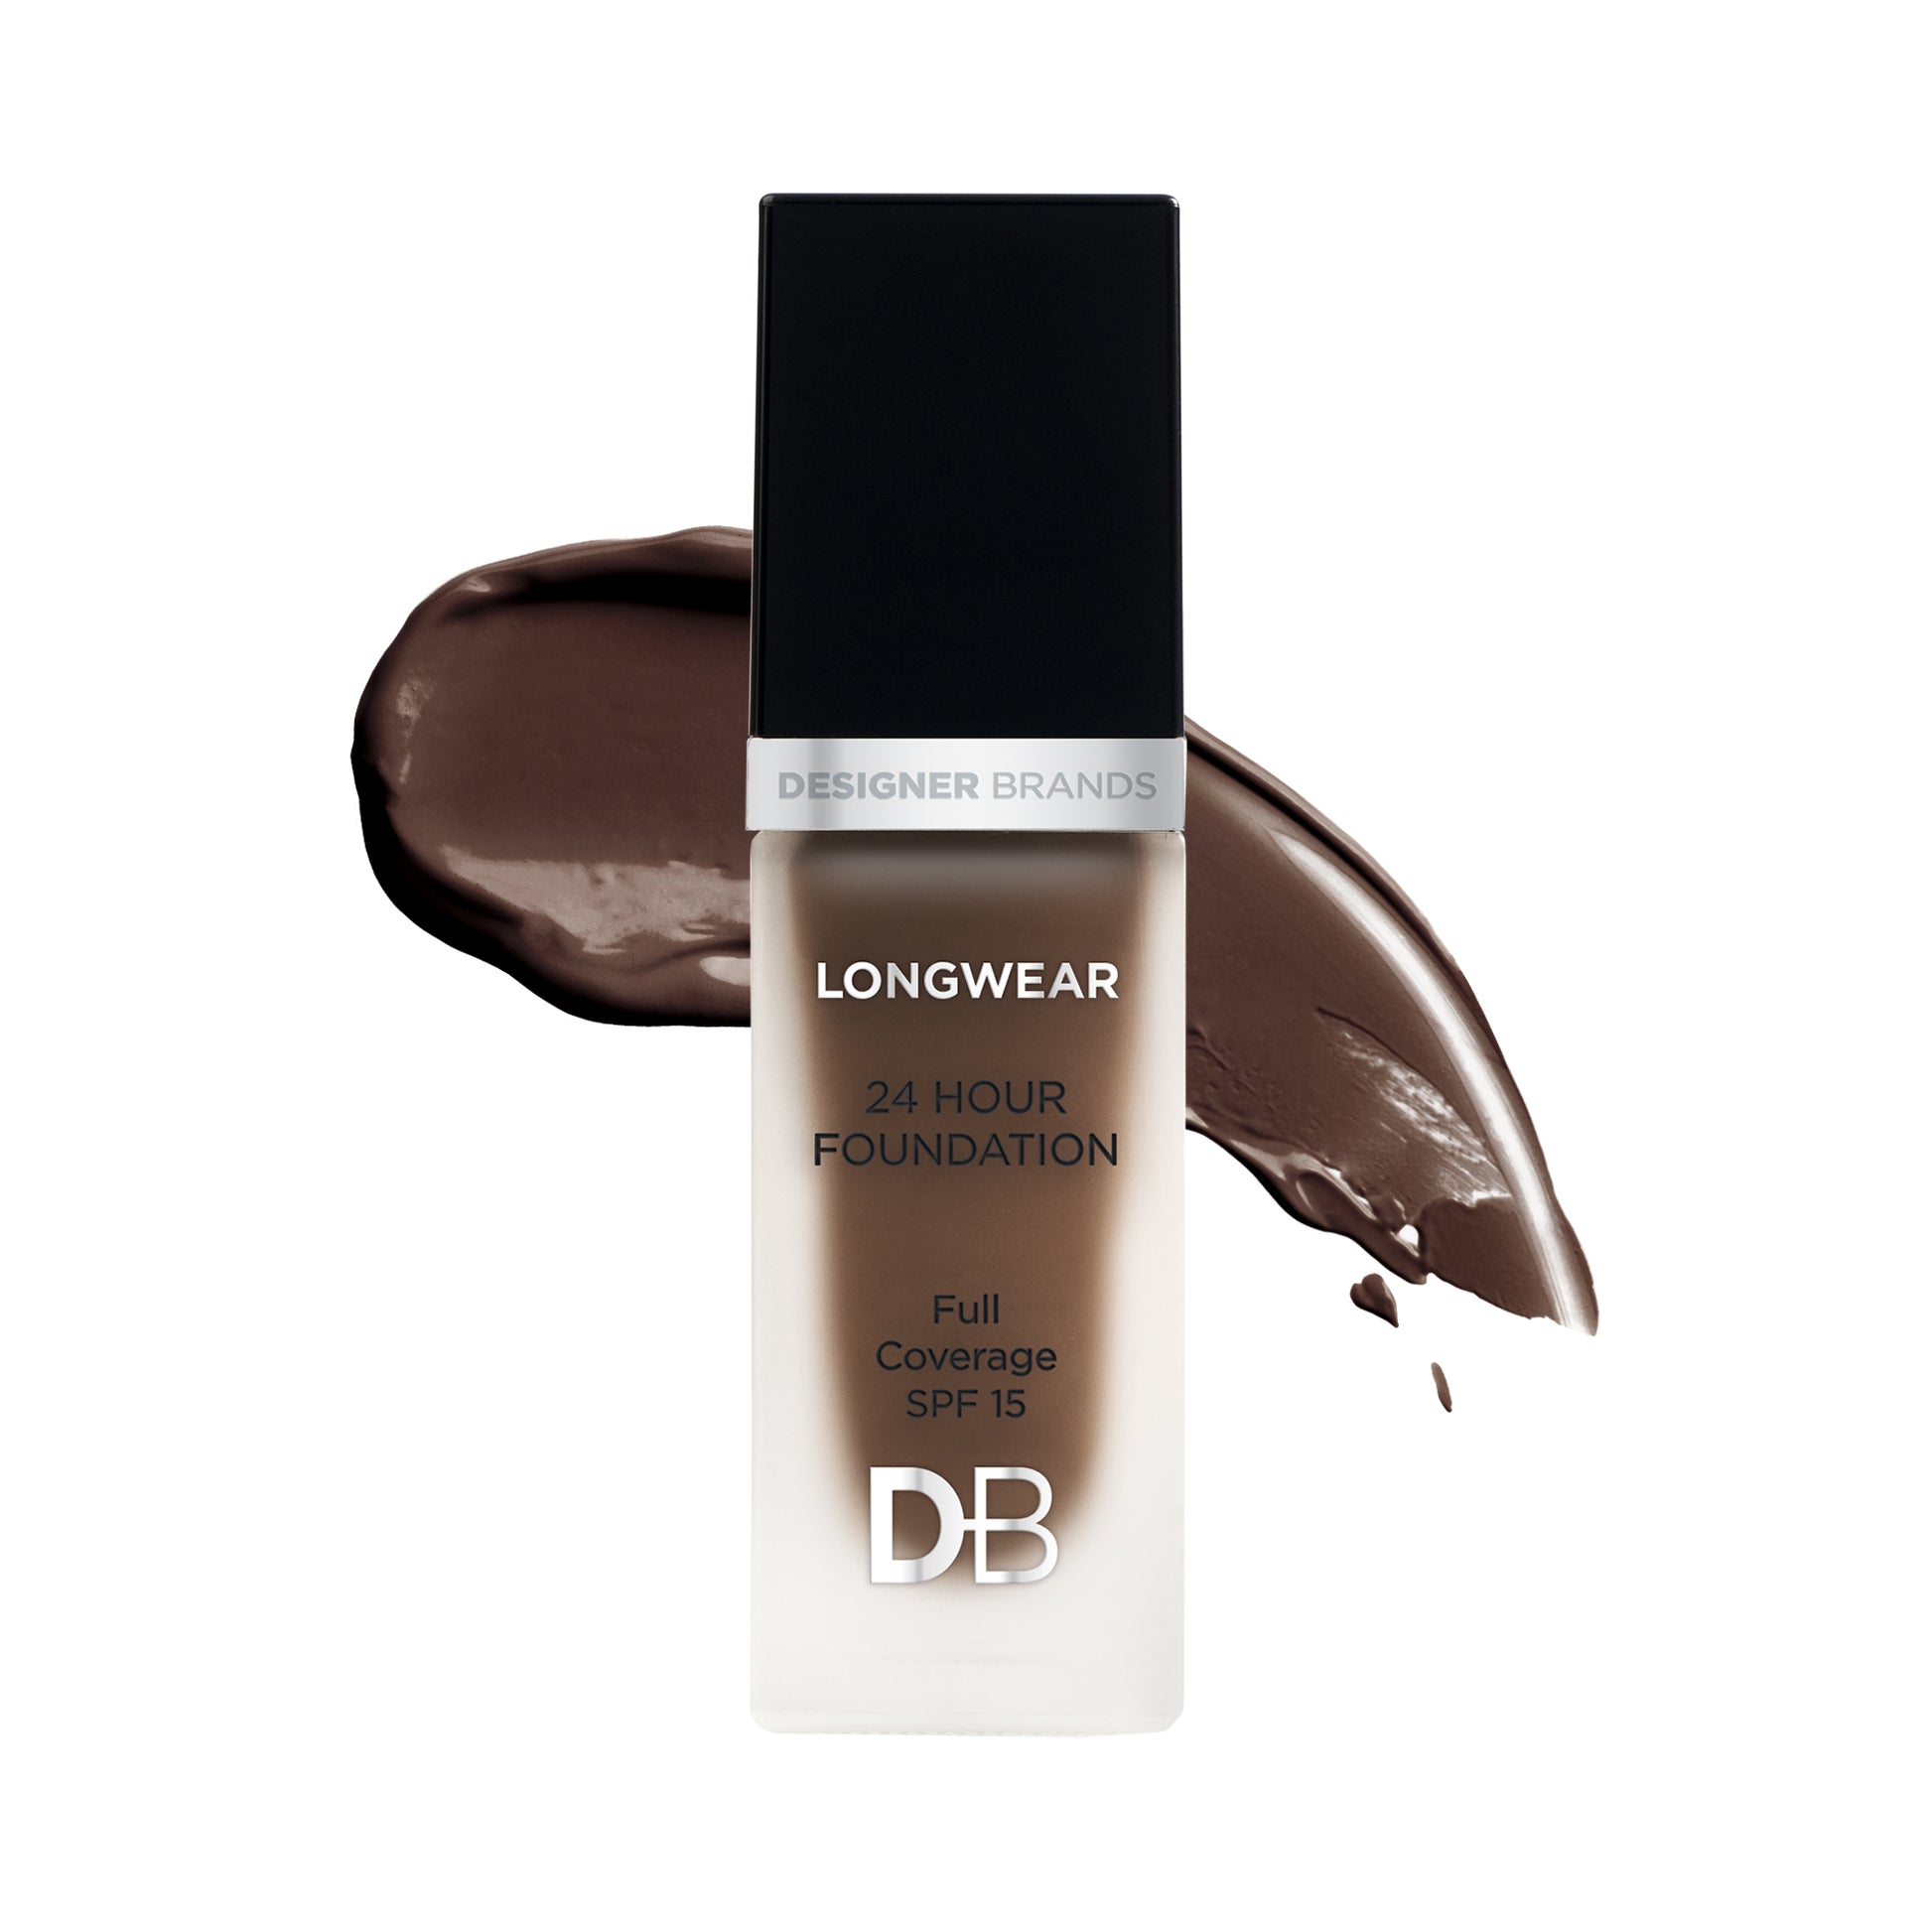 Longwear 24 Hour Foundation (Deep Cocoa) | DB Cosmetics